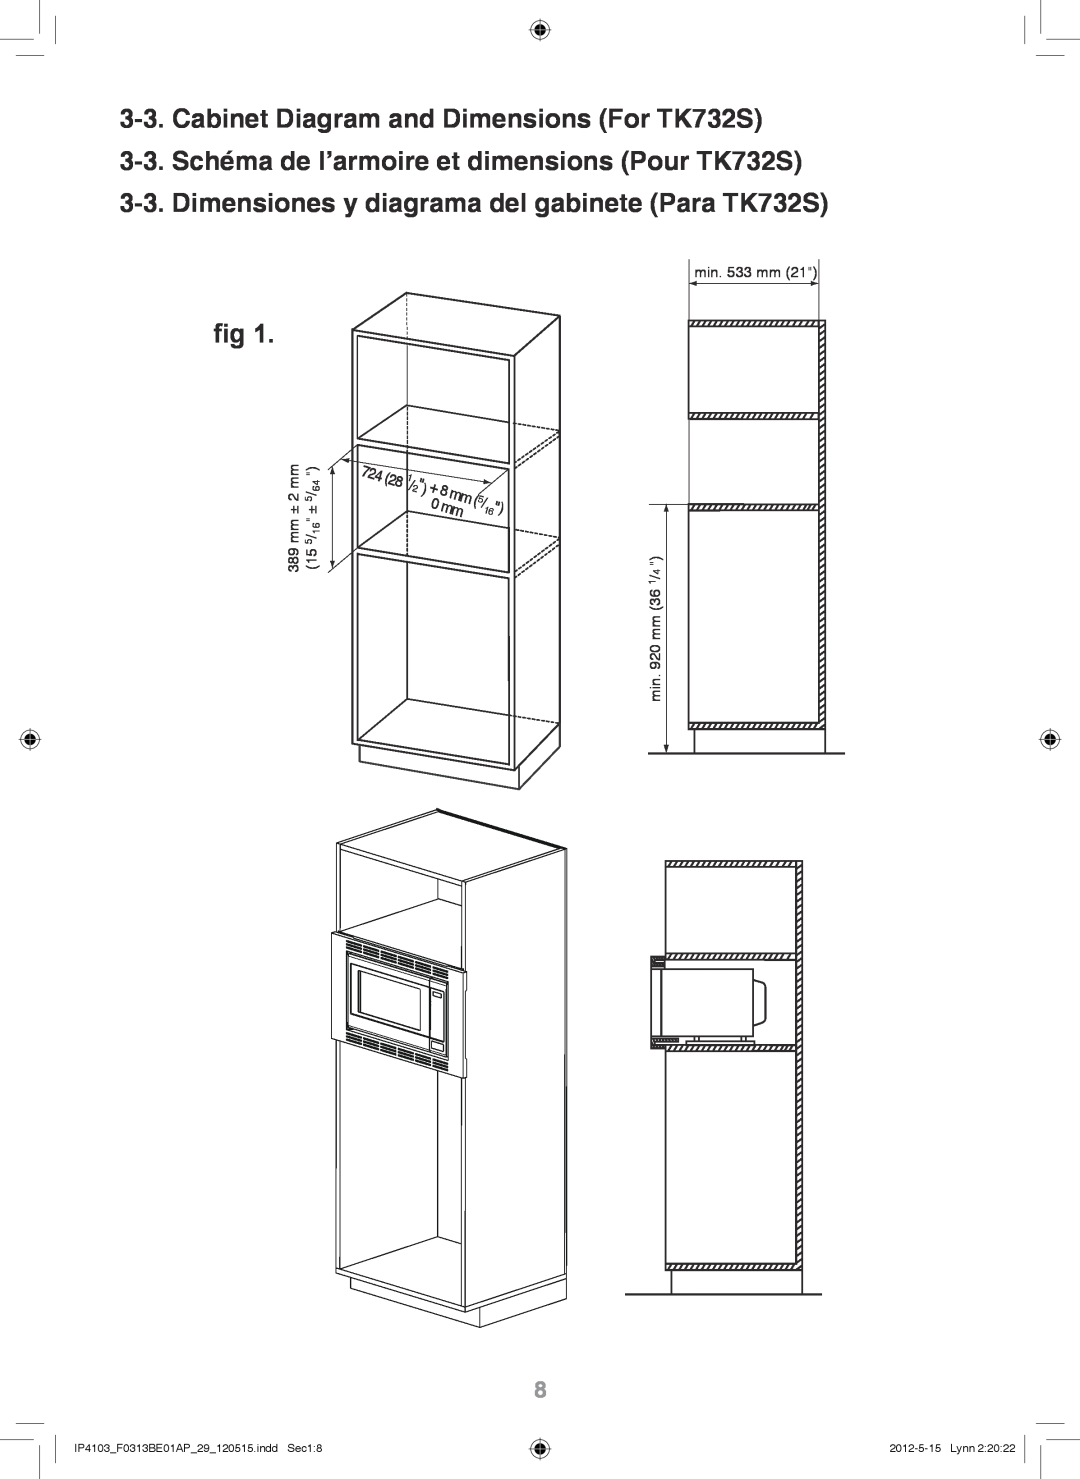 Panasonic NN-TK932S Cabinet Diagram and Dimensions For TK732S, 3-3.Schéma de l’armoire et dimensions Pour TK732S 